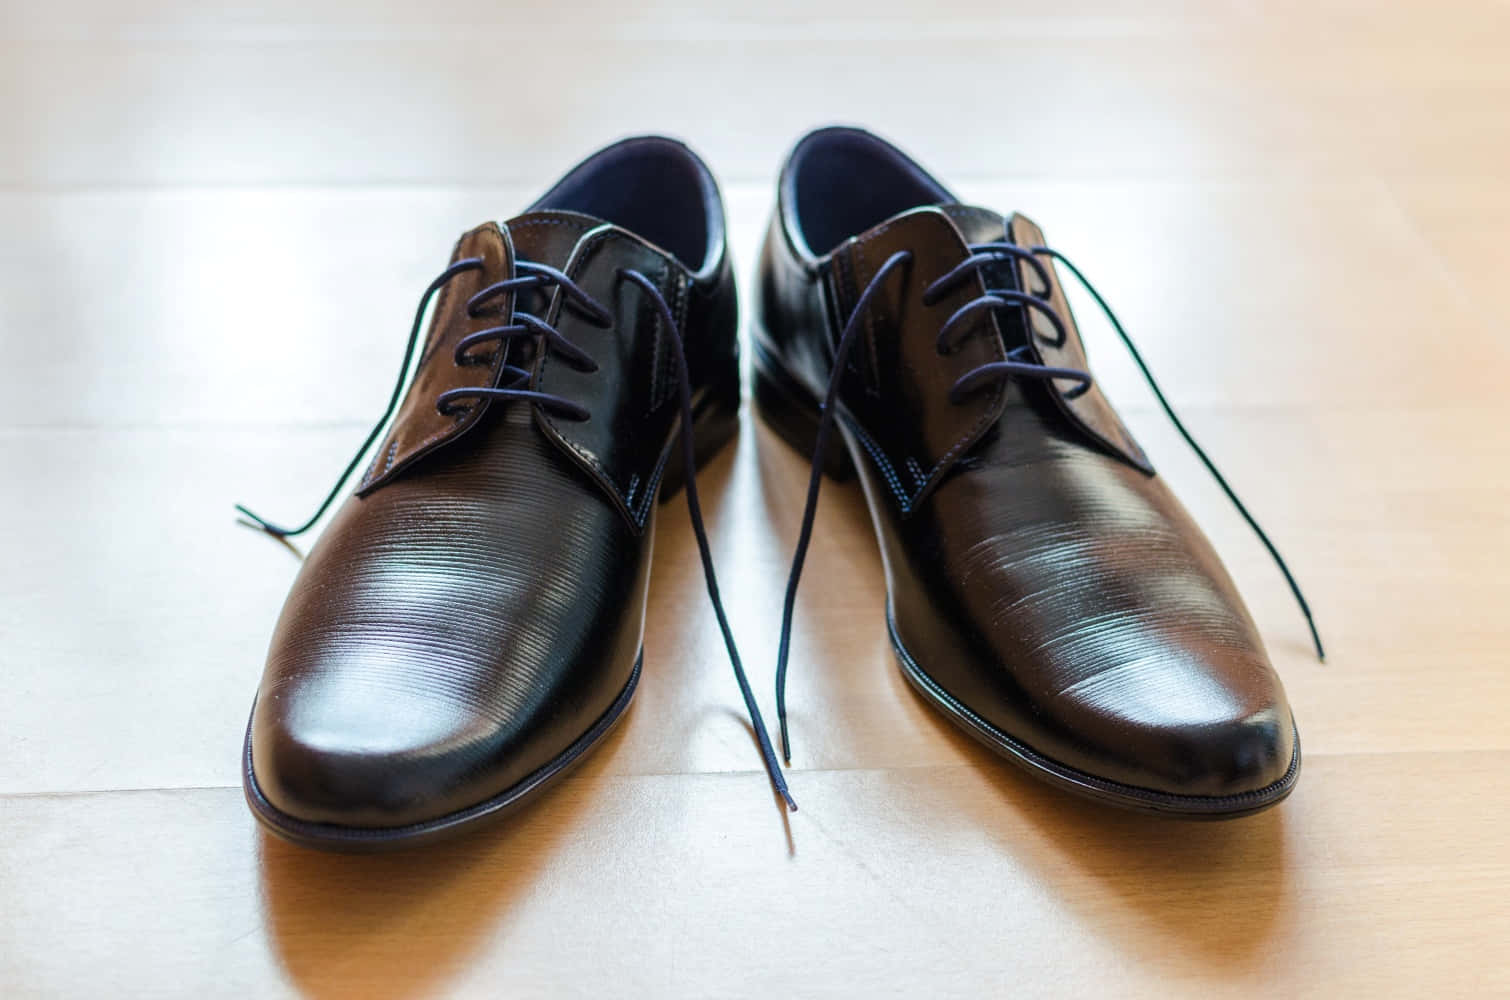 Zapatosnegros Con Cordones Azules Sobre Un Suelo De Madera